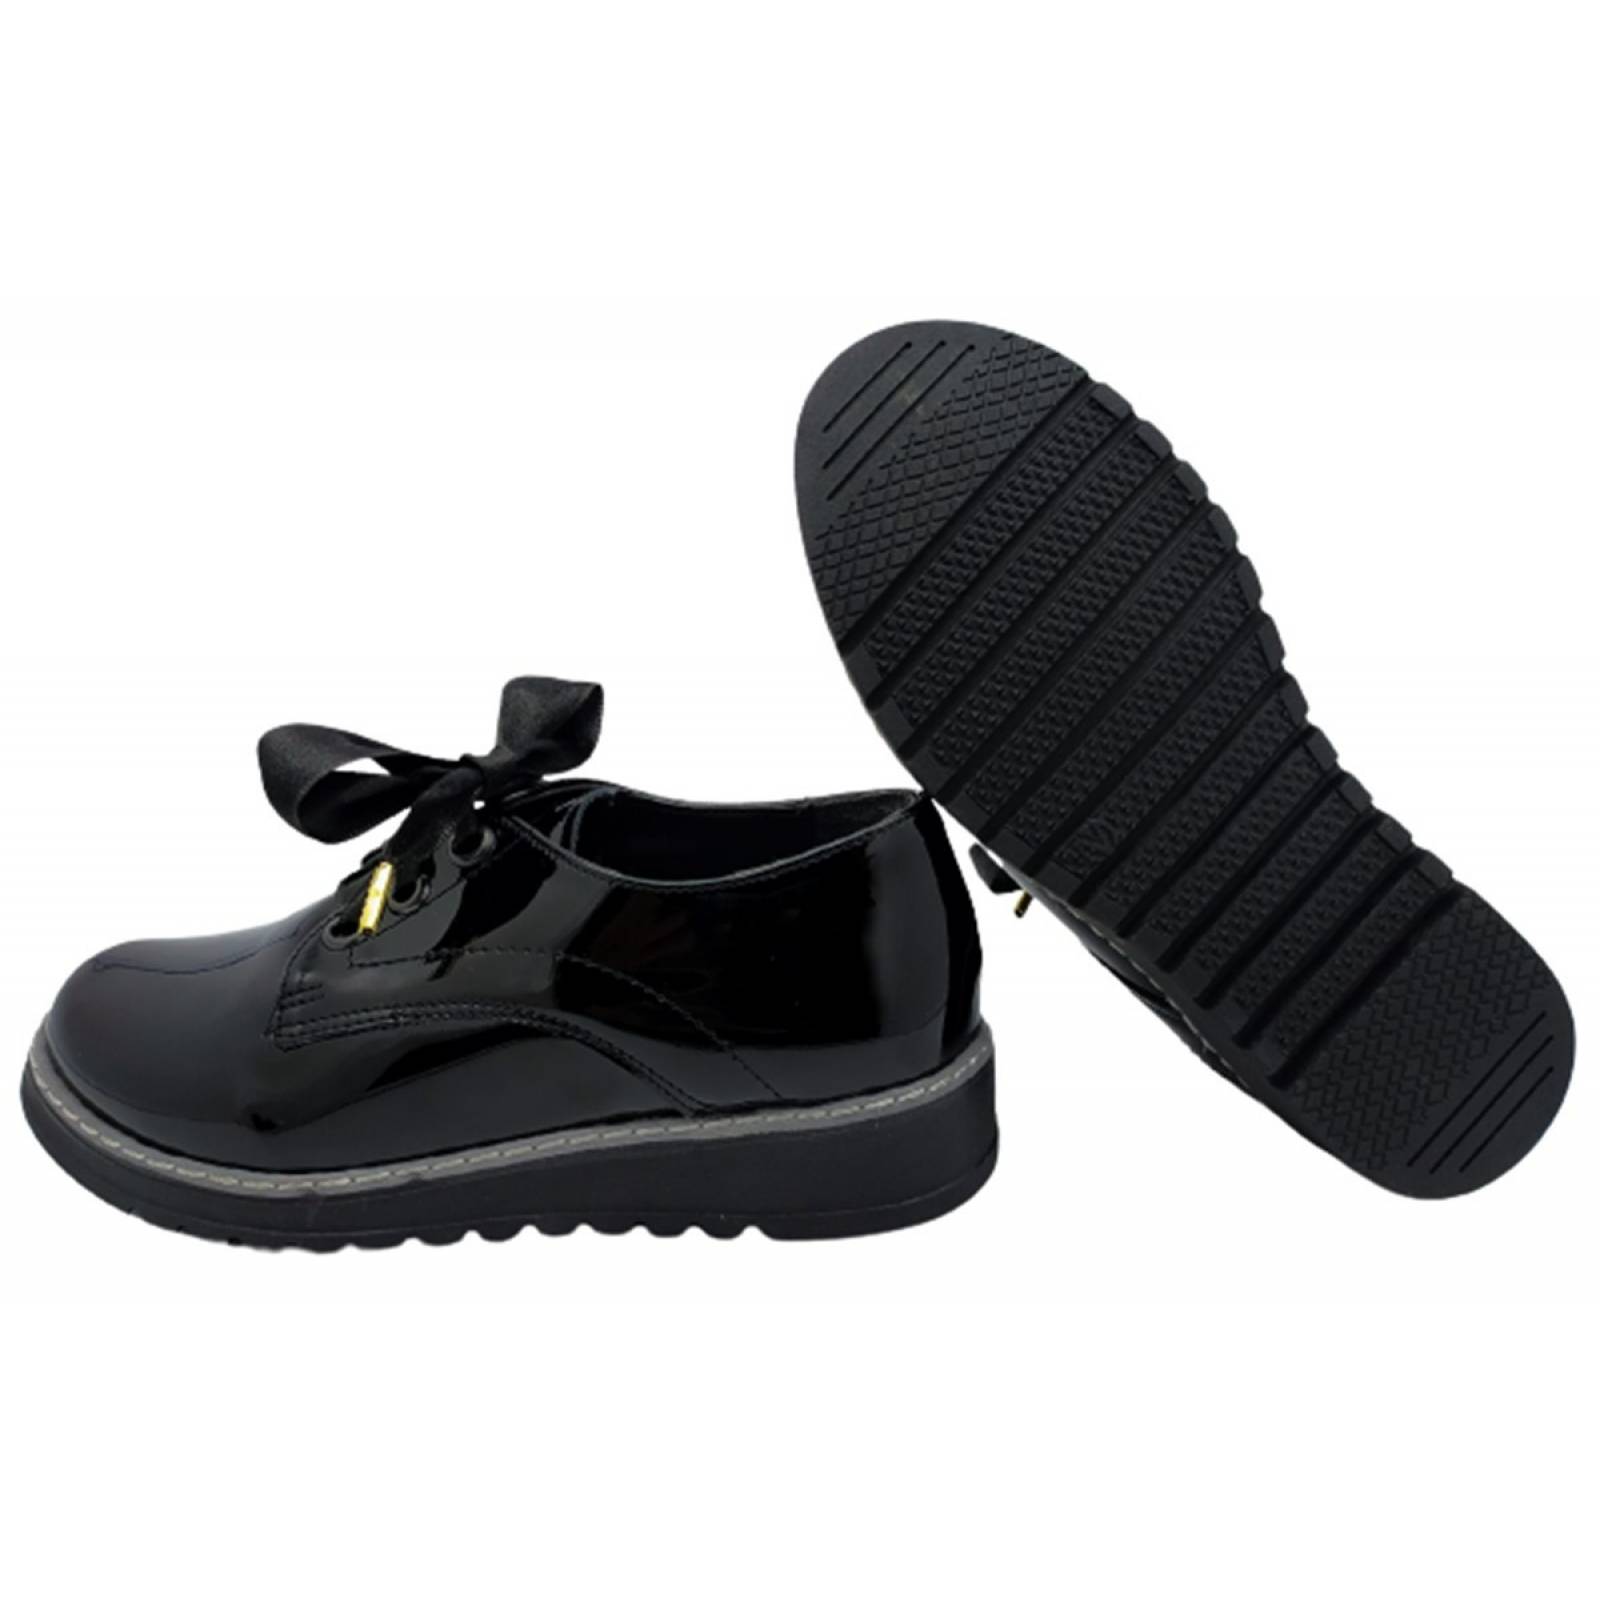 Zapato Escolar Para Niña Charol Negro Cómodos Antiderrapante negro